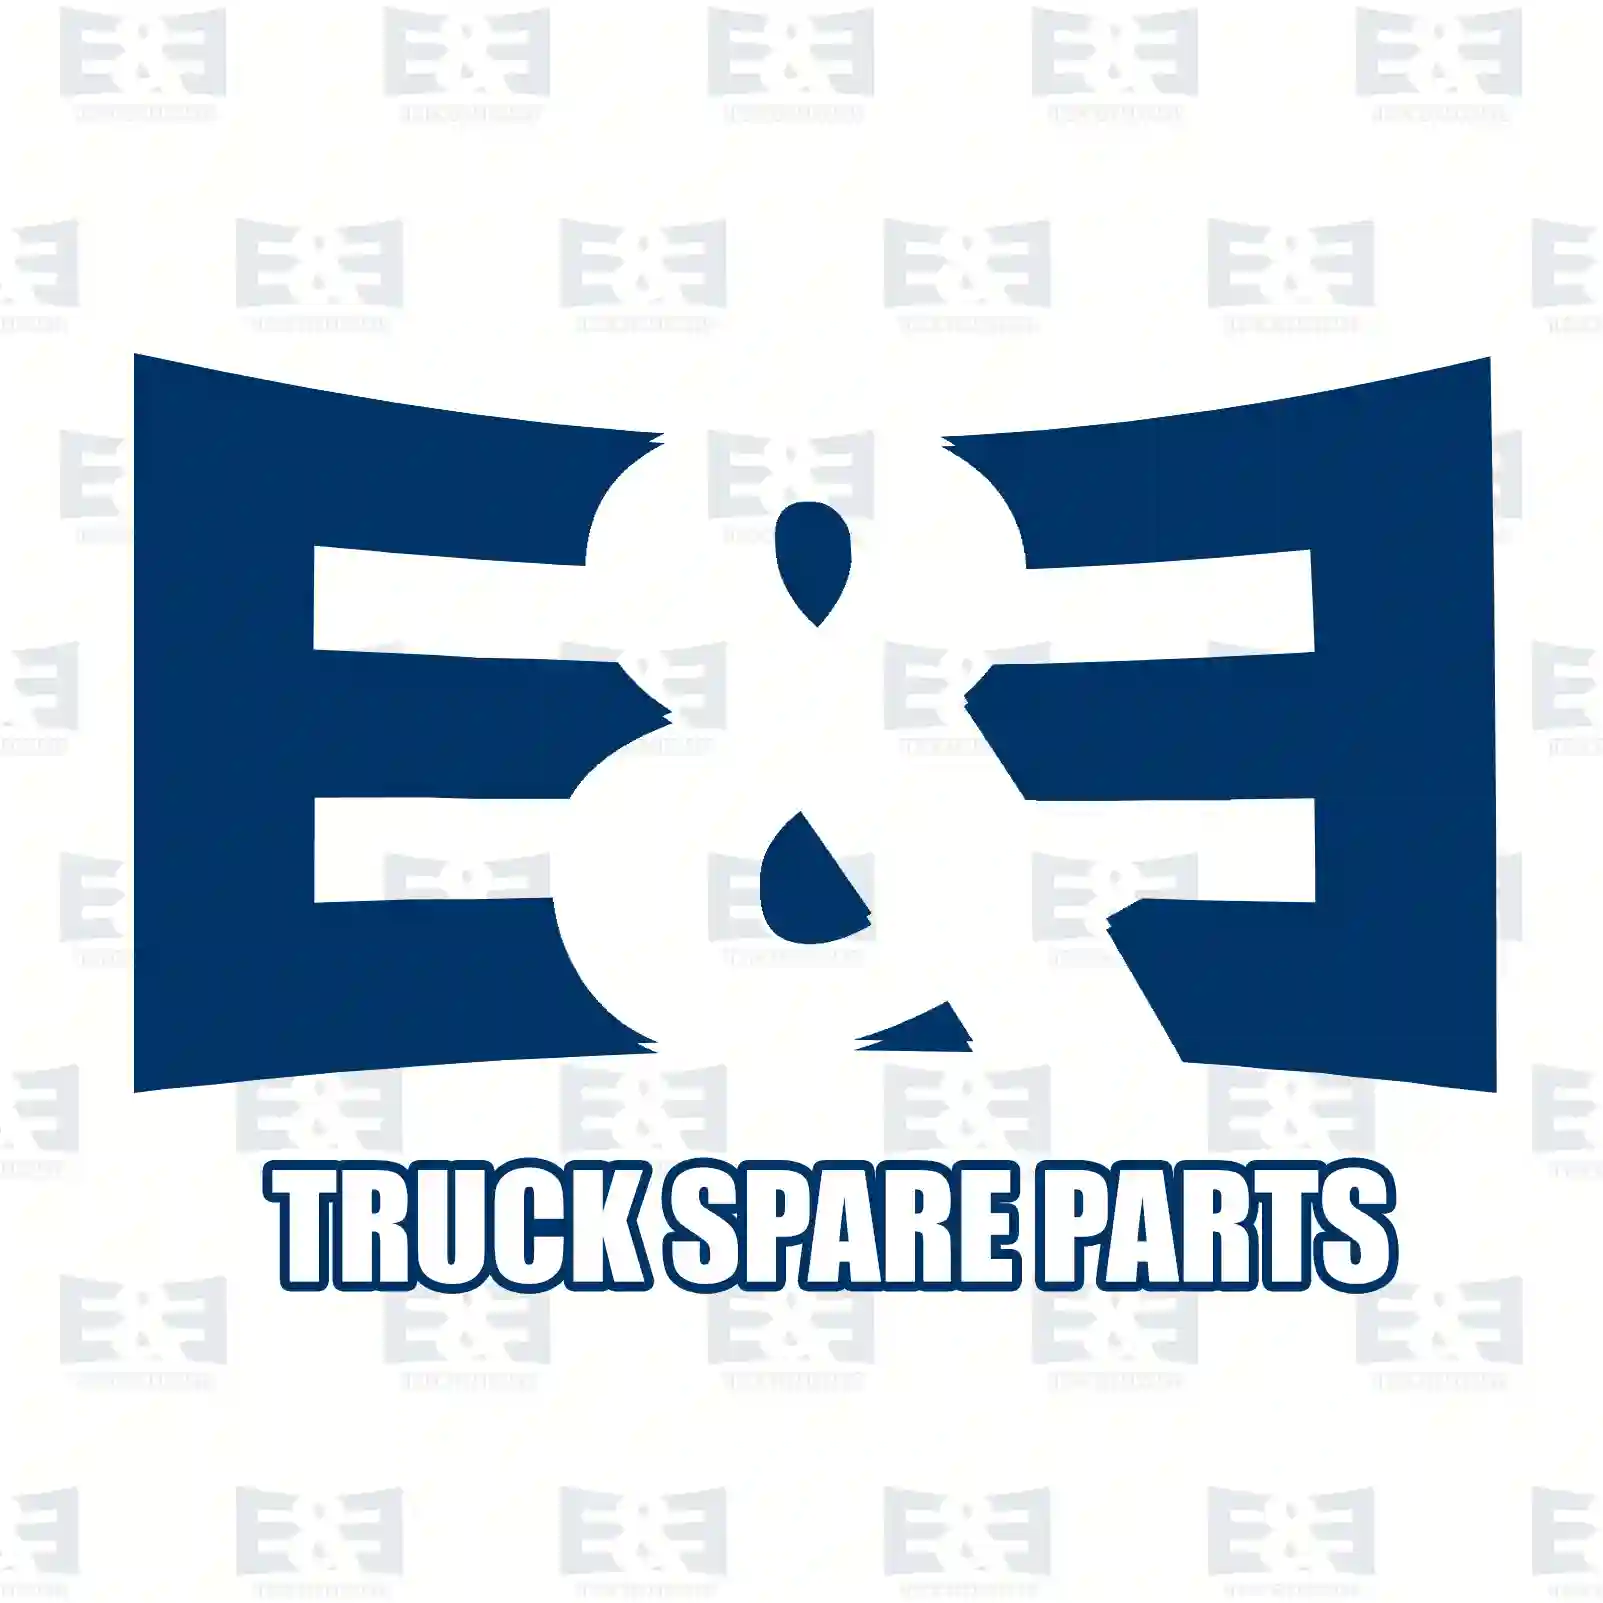 Bumper, center, 2E2292367, 6418800270, 64188 ||  2E2292367 E&E Truck Spare Parts | Truck Spare Parts, Auotomotive Spare Parts Bumper, center, 2E2292367, 6418800270, 64188 ||  2E2292367 E&E Truck Spare Parts | Truck Spare Parts, Auotomotive Spare Parts